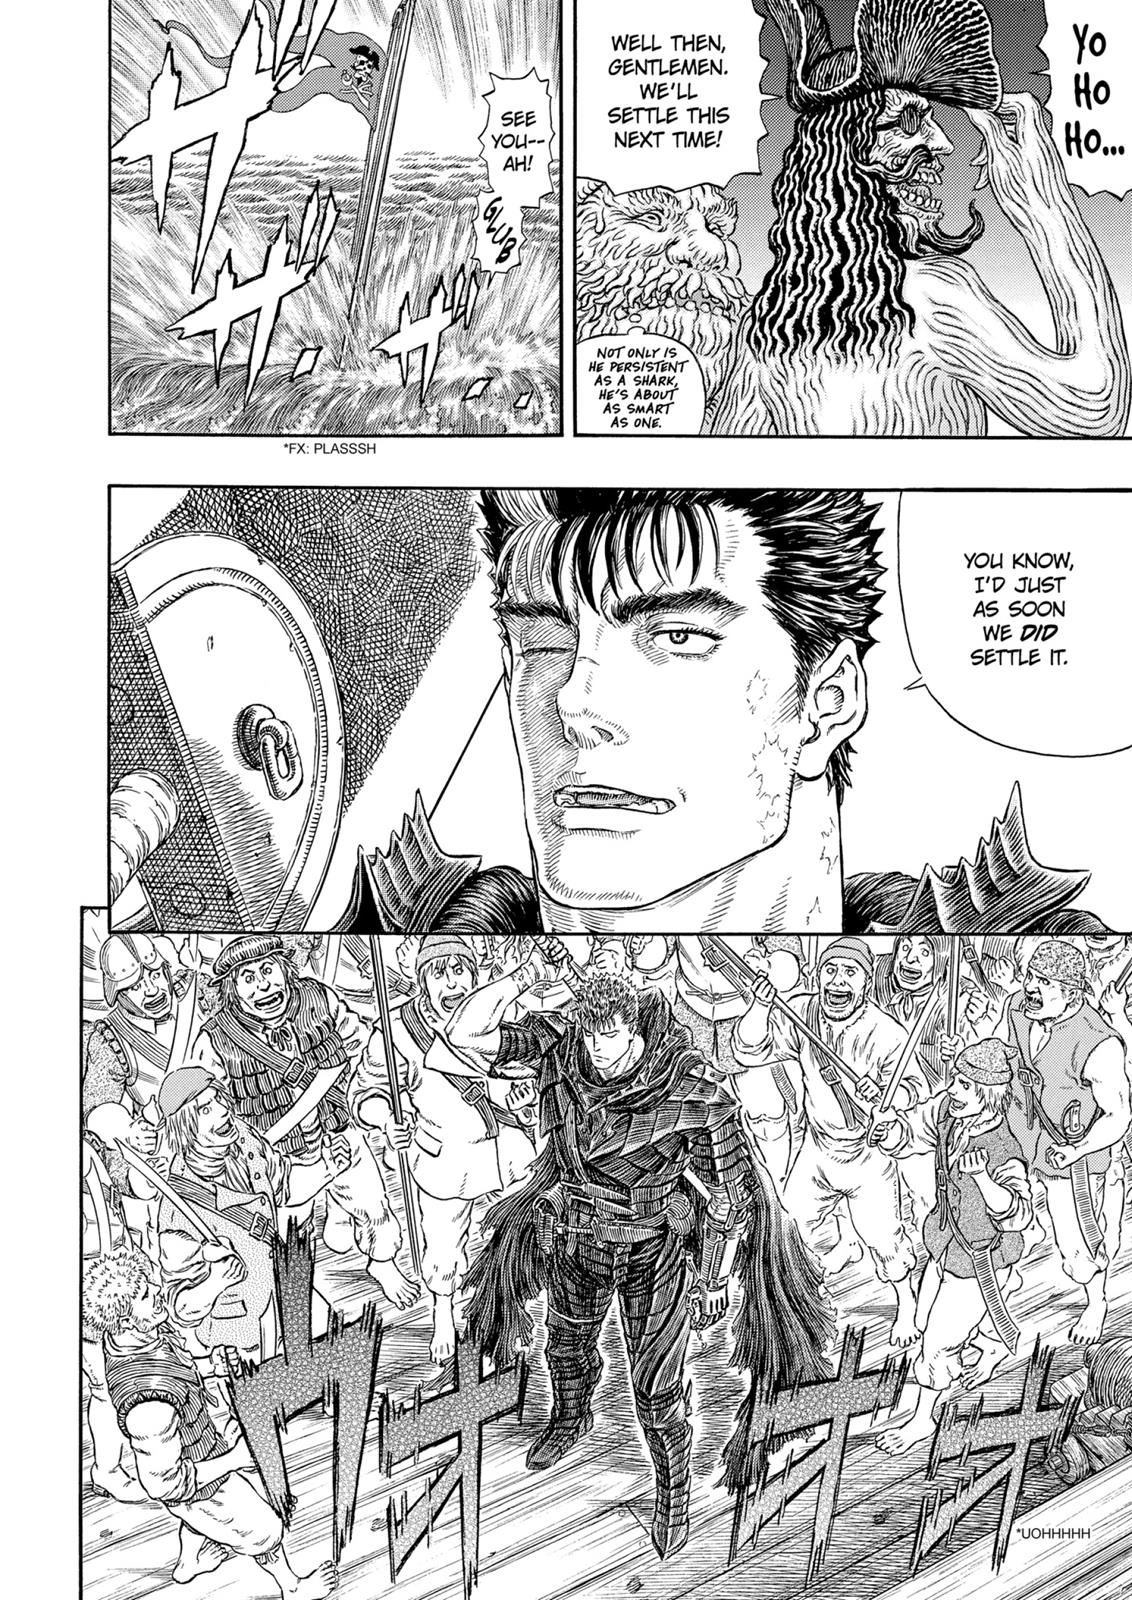 Berserk Manga Chapter 311 image 05